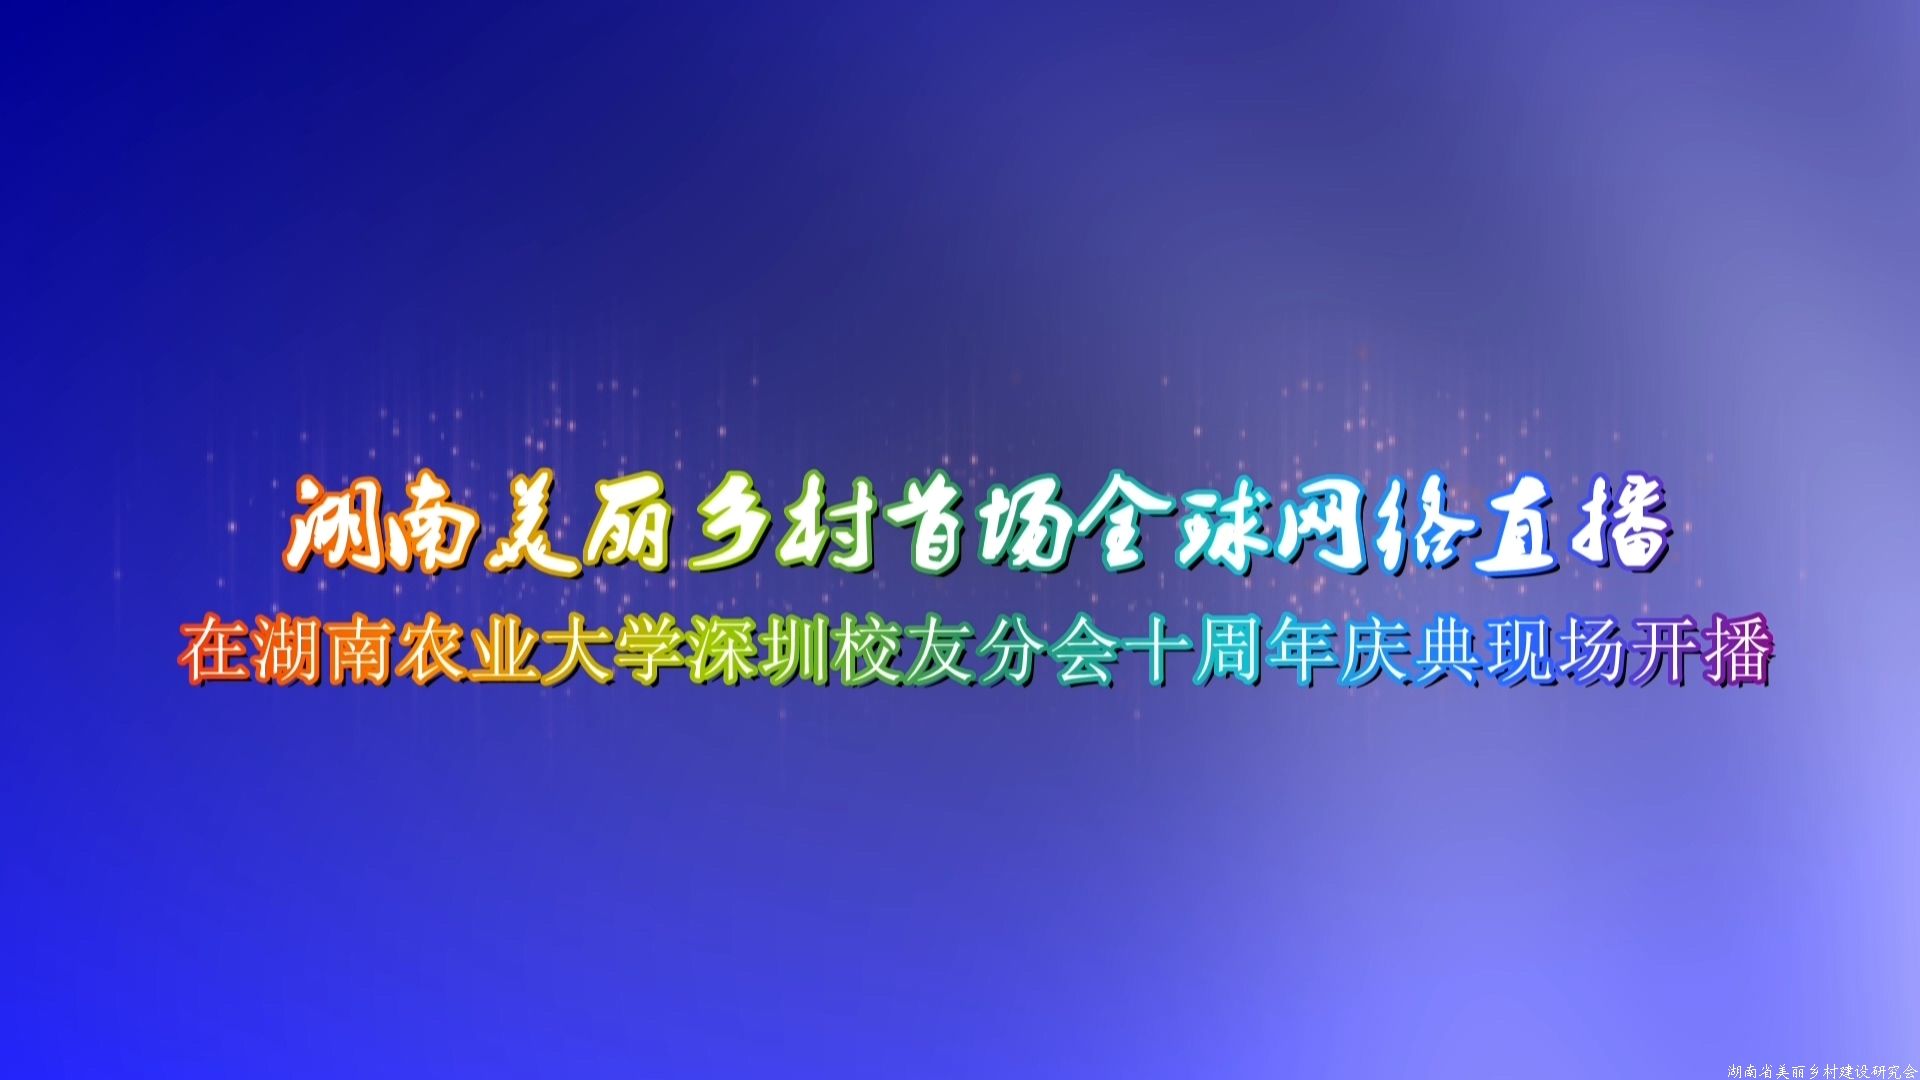 湖南美丽乡村首场全球网络直播在深圳市开播